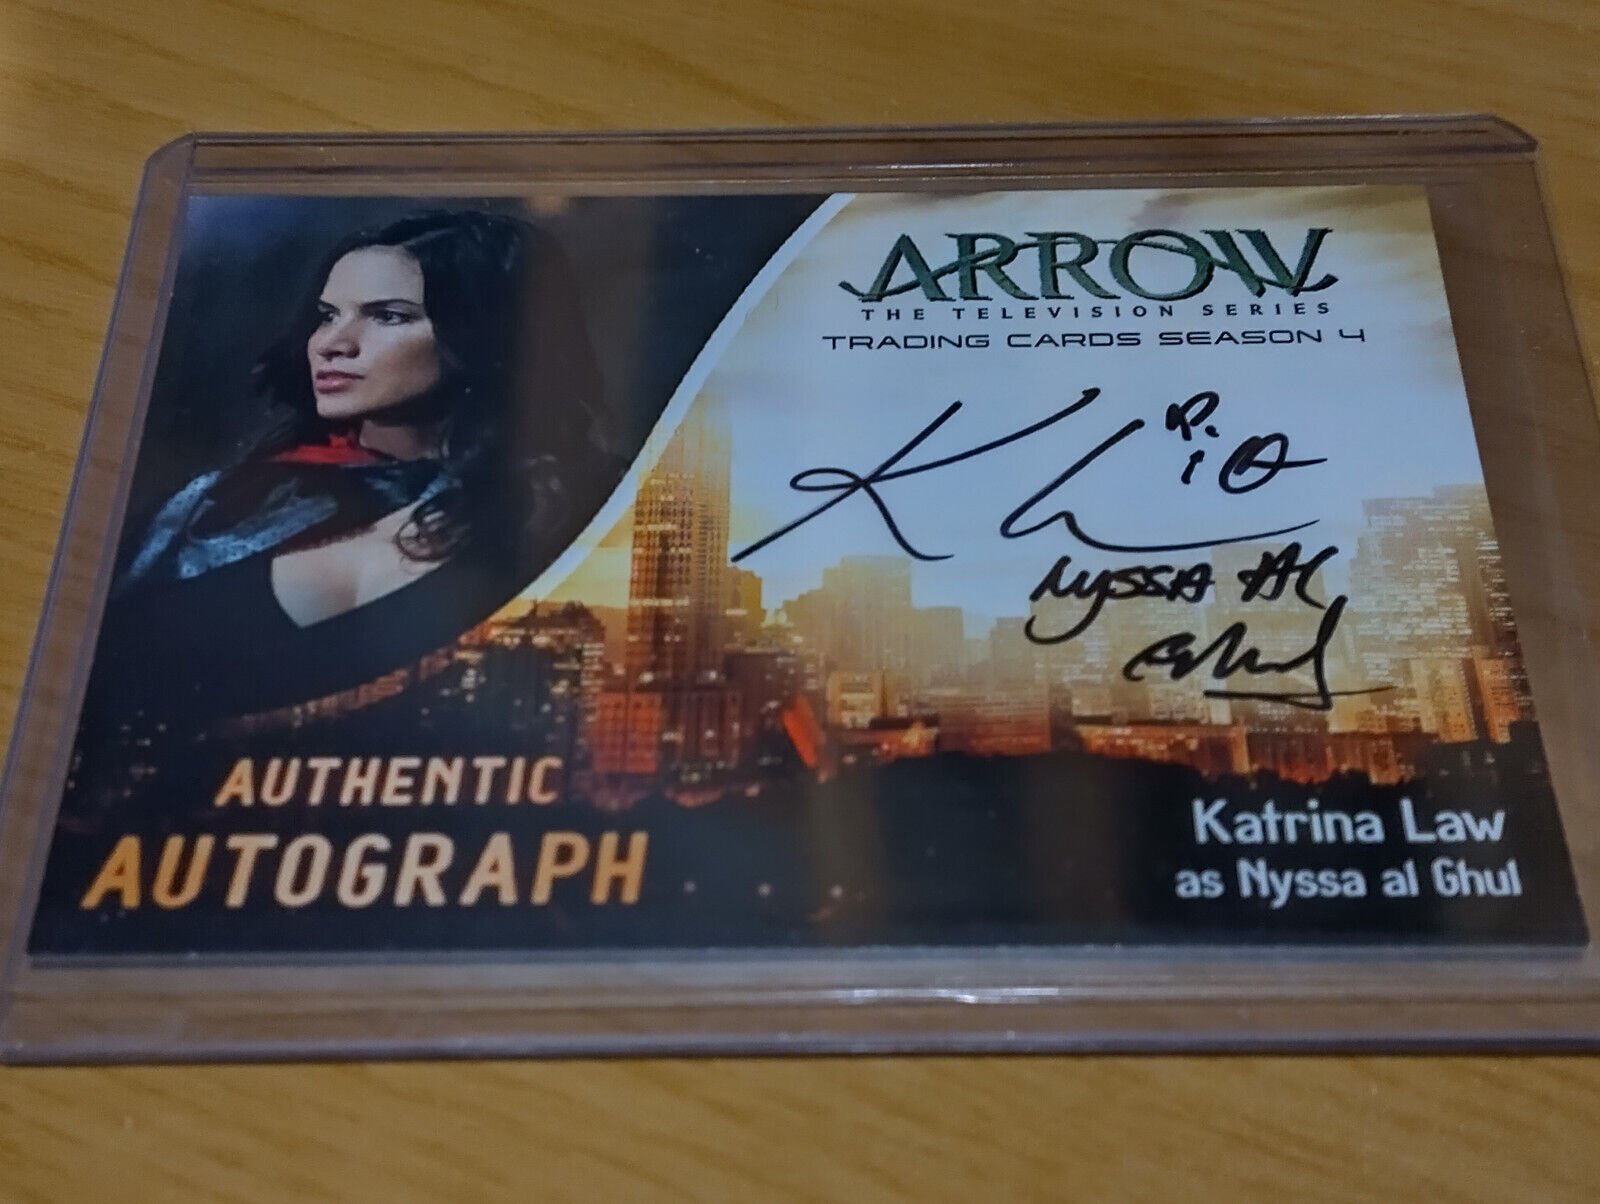 Arrow Season 4 Autograph Card - Katrina Law as Nyssa al Ghul